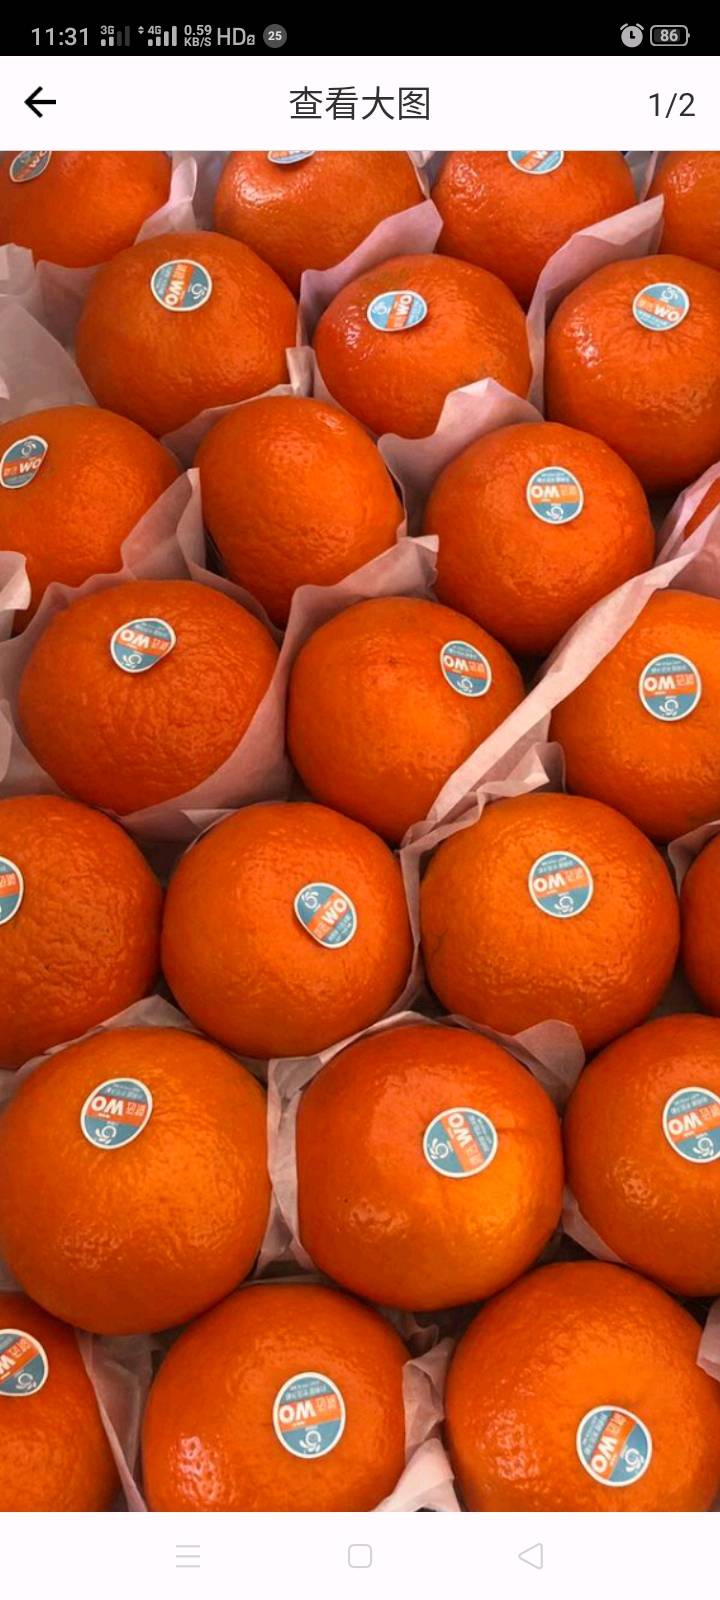 场地：安徽芜湖
100亩橘子树/9000棵树
目前有5000/8000斤橘子